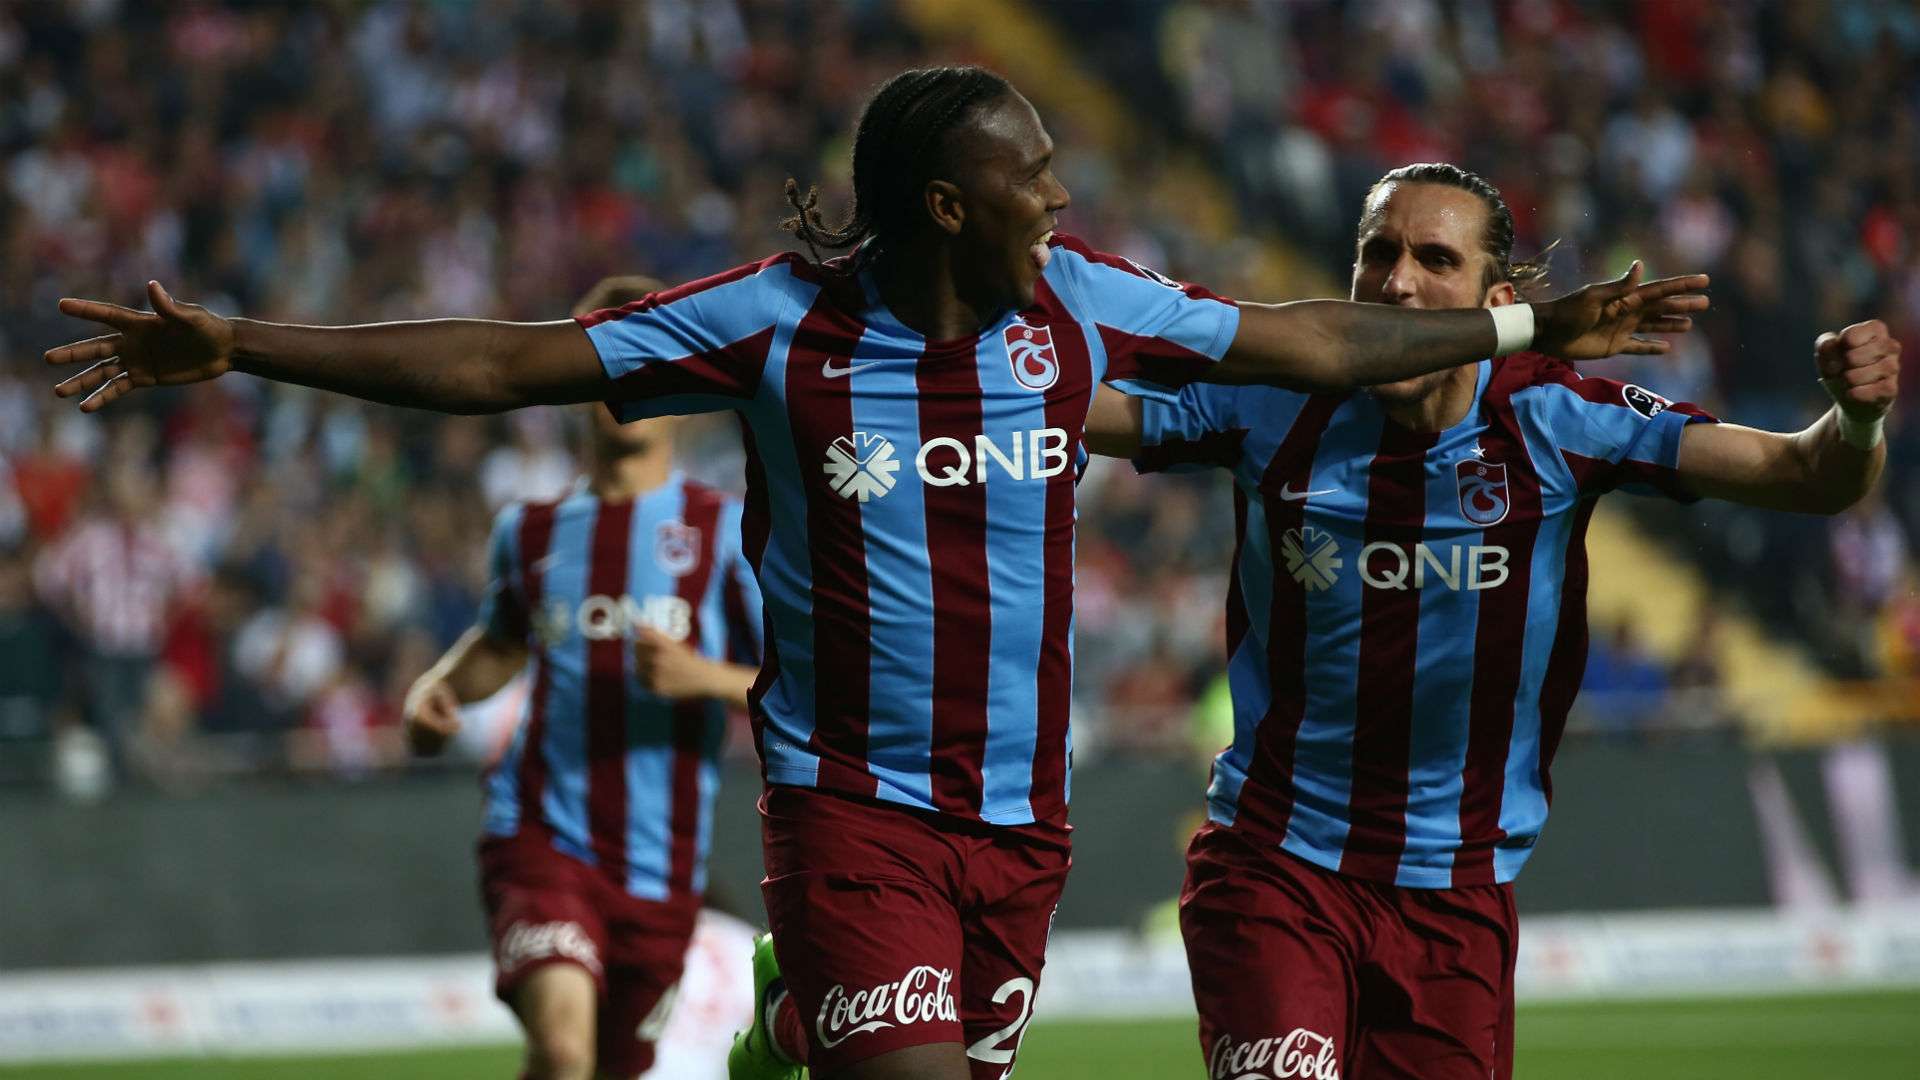 Rodallega Antalyaspor - Trabzonspor 0422017